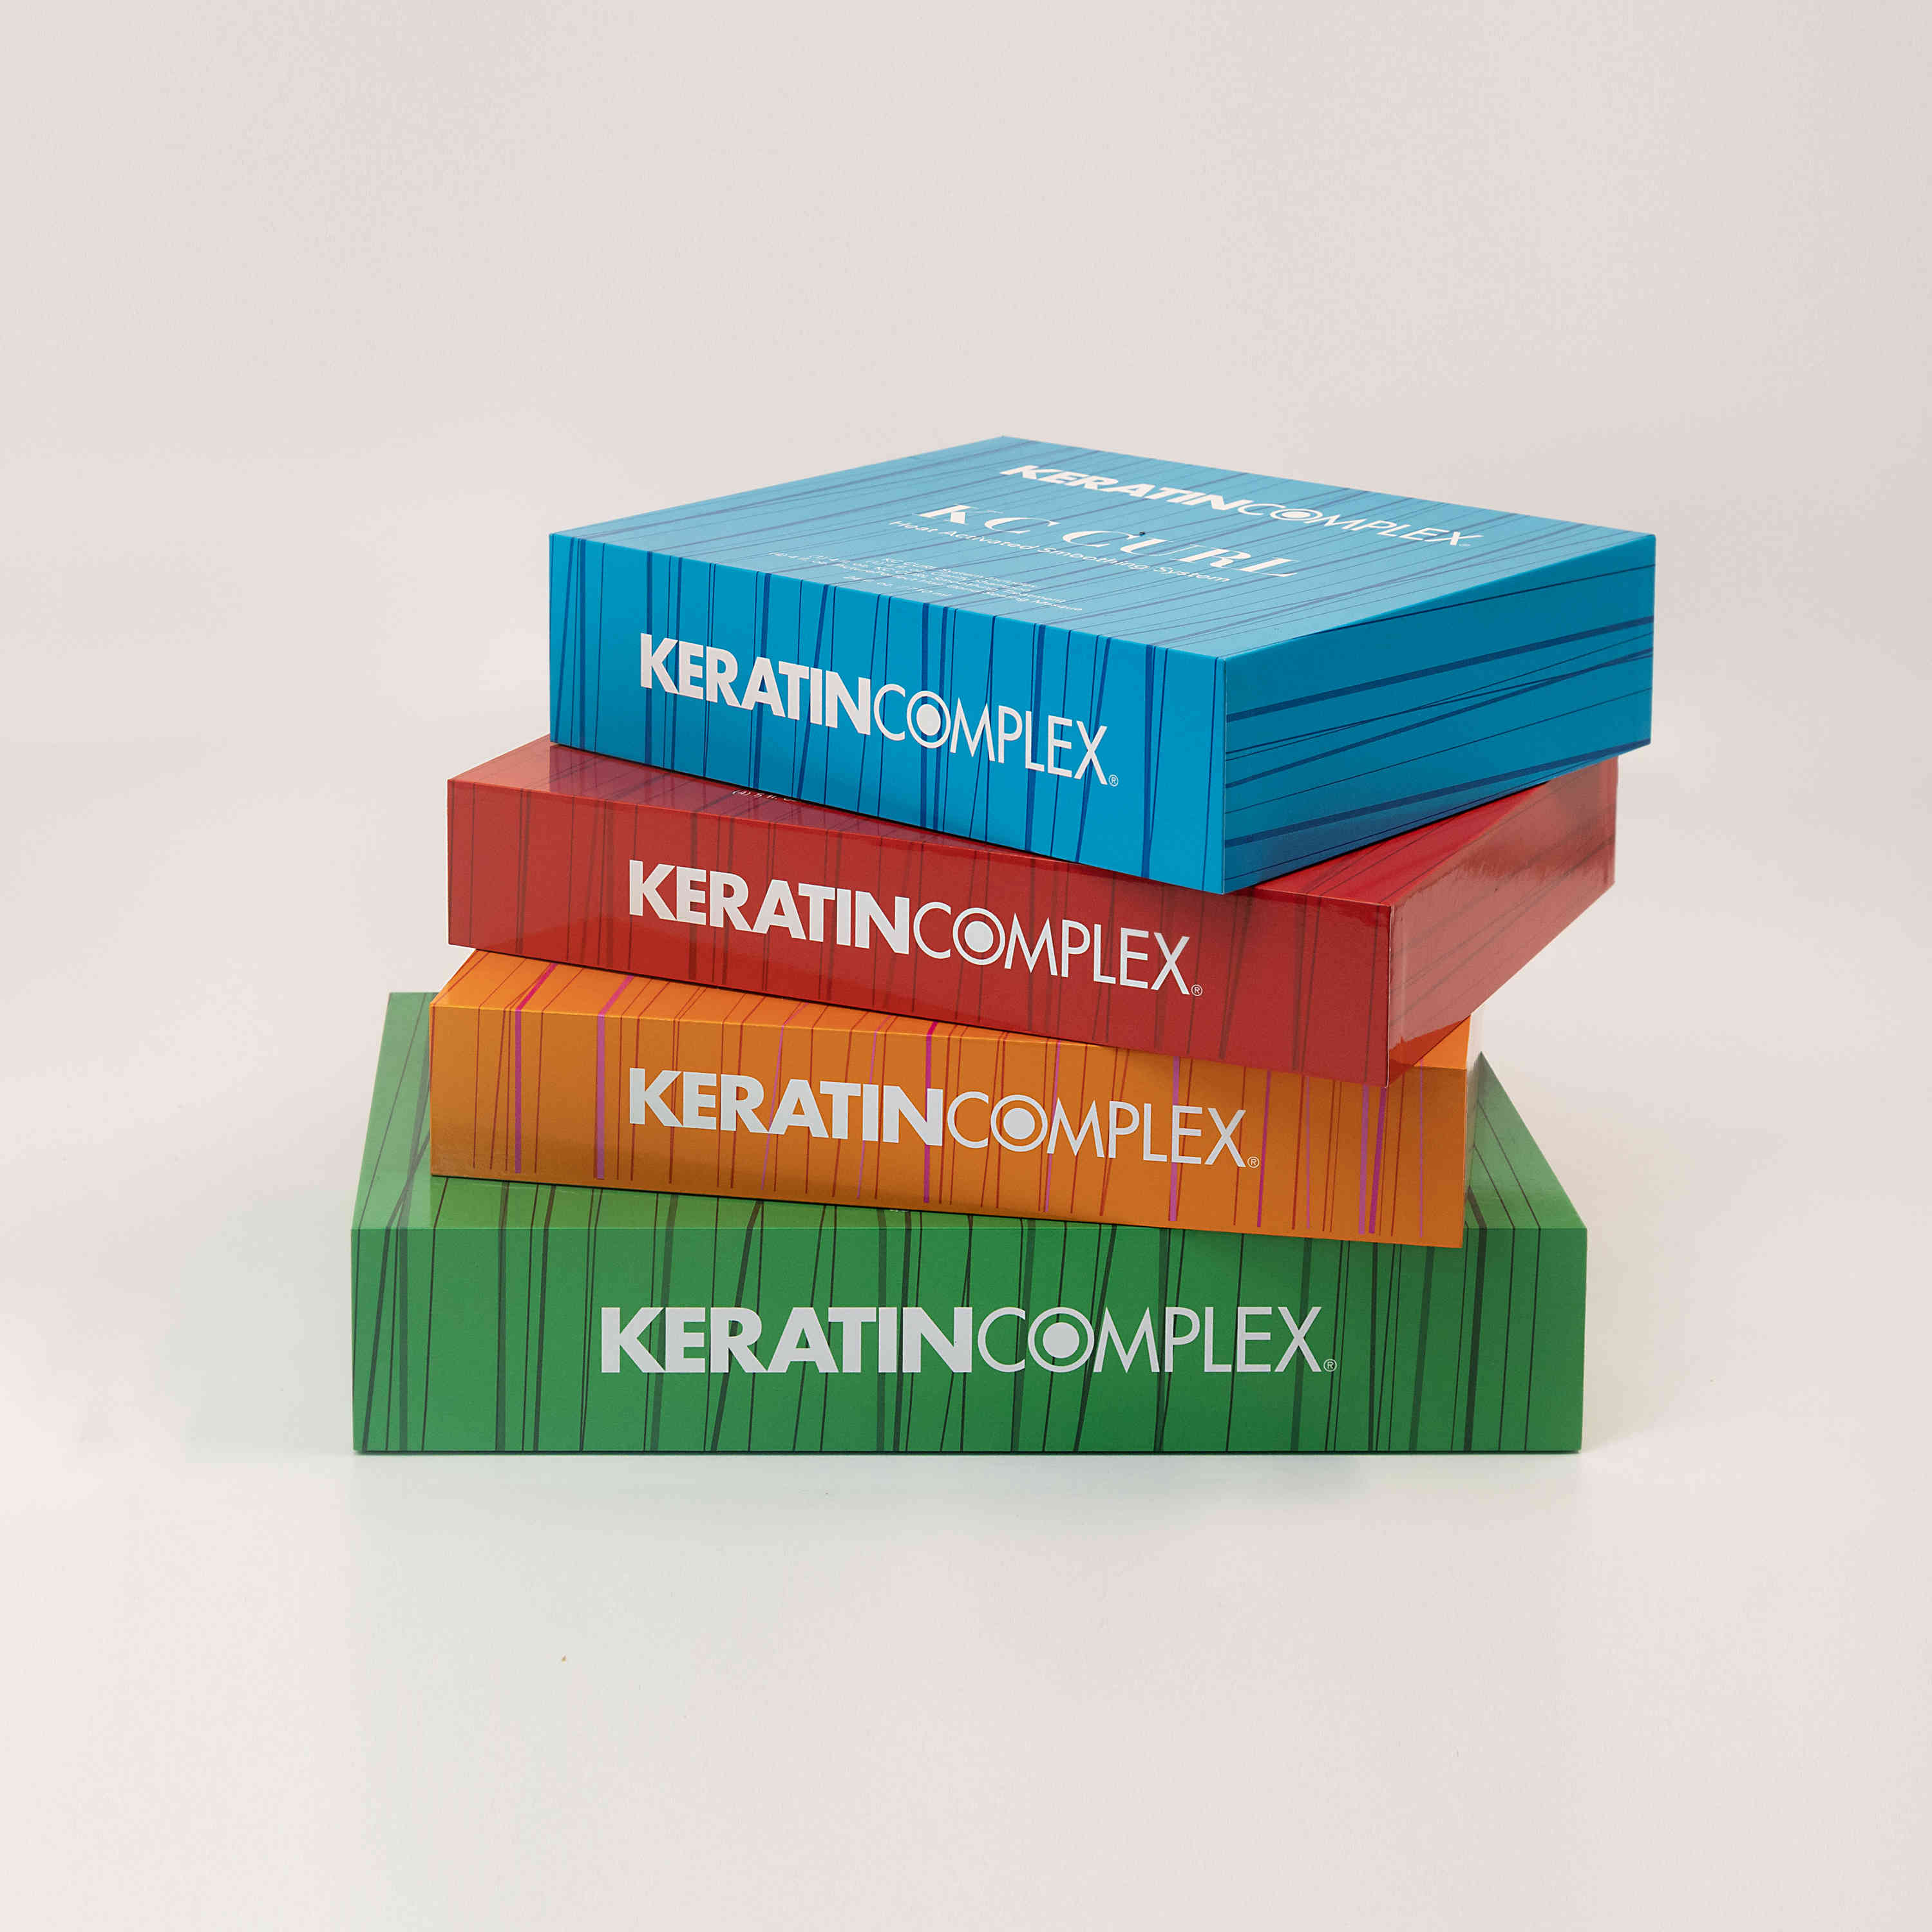 Keratin Complex Boxes